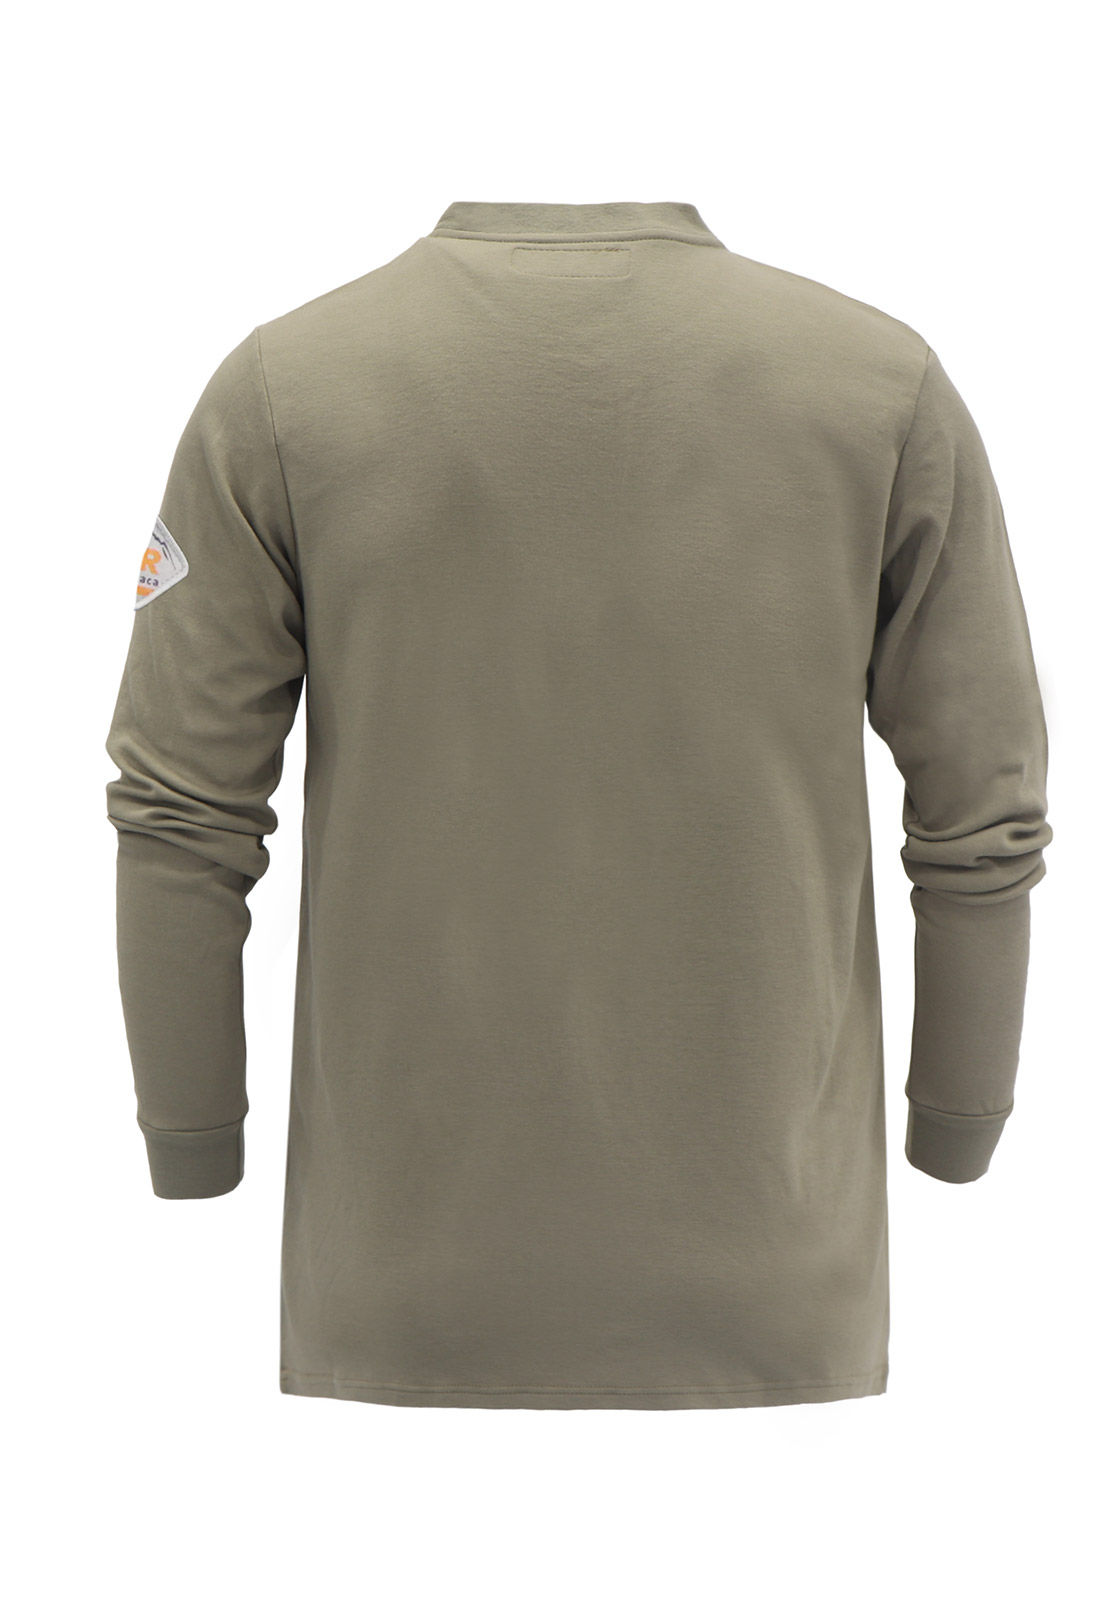 Titicaca Men's FR T-Shirts Blend Workwear Lightweight Long Sleeve Khaki T-Shirt 